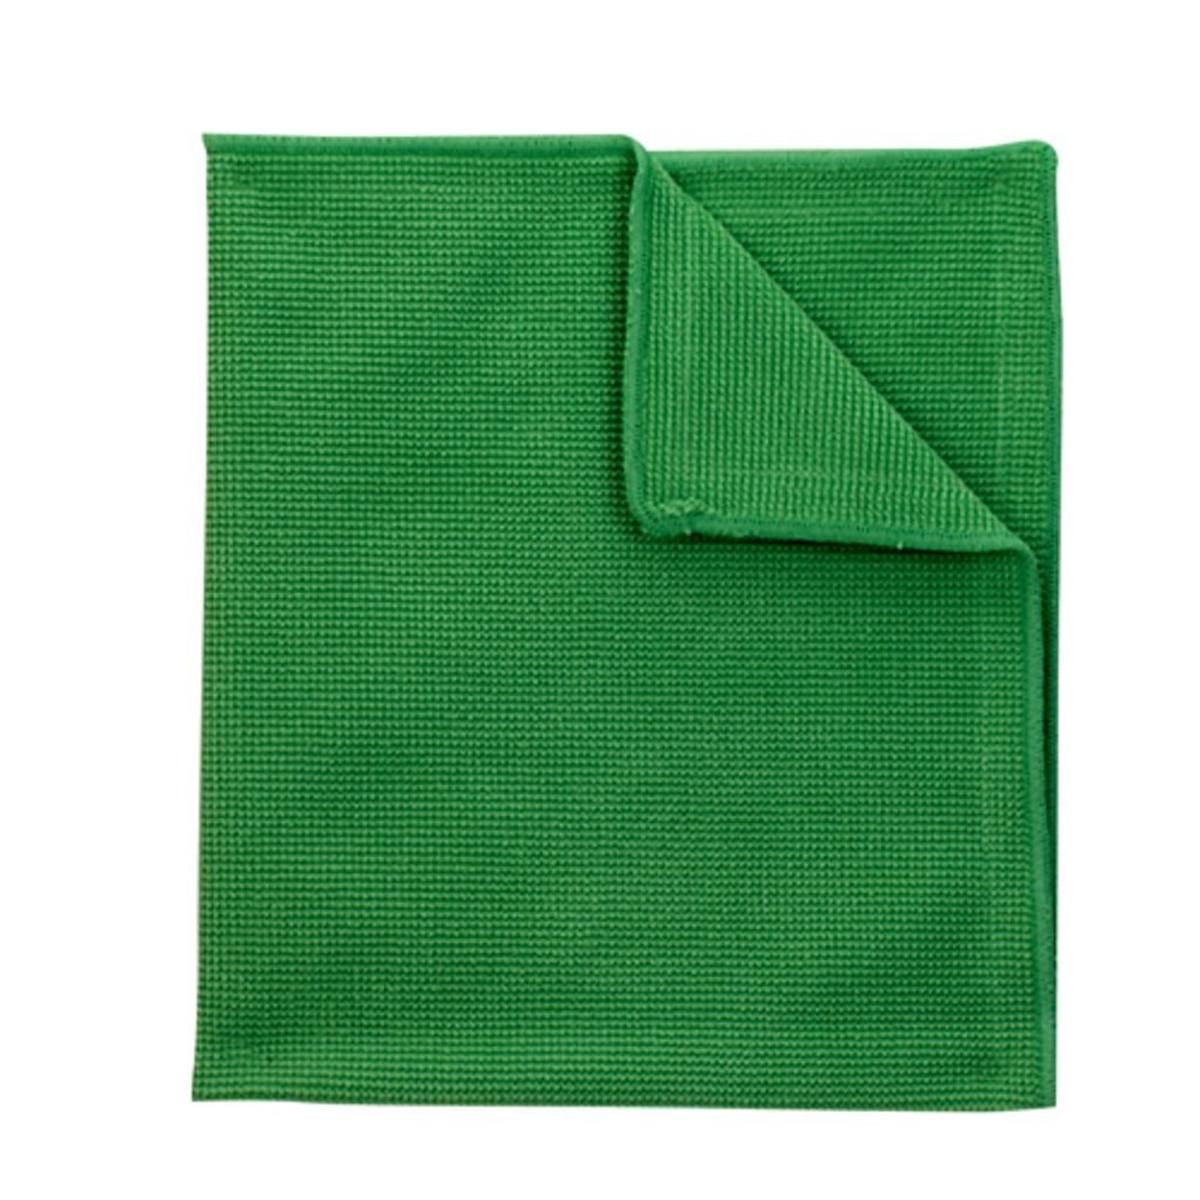 panno in microfibra 3M Scotch-Brite EssentEco 2012, verde, 360 mm x 360 mm